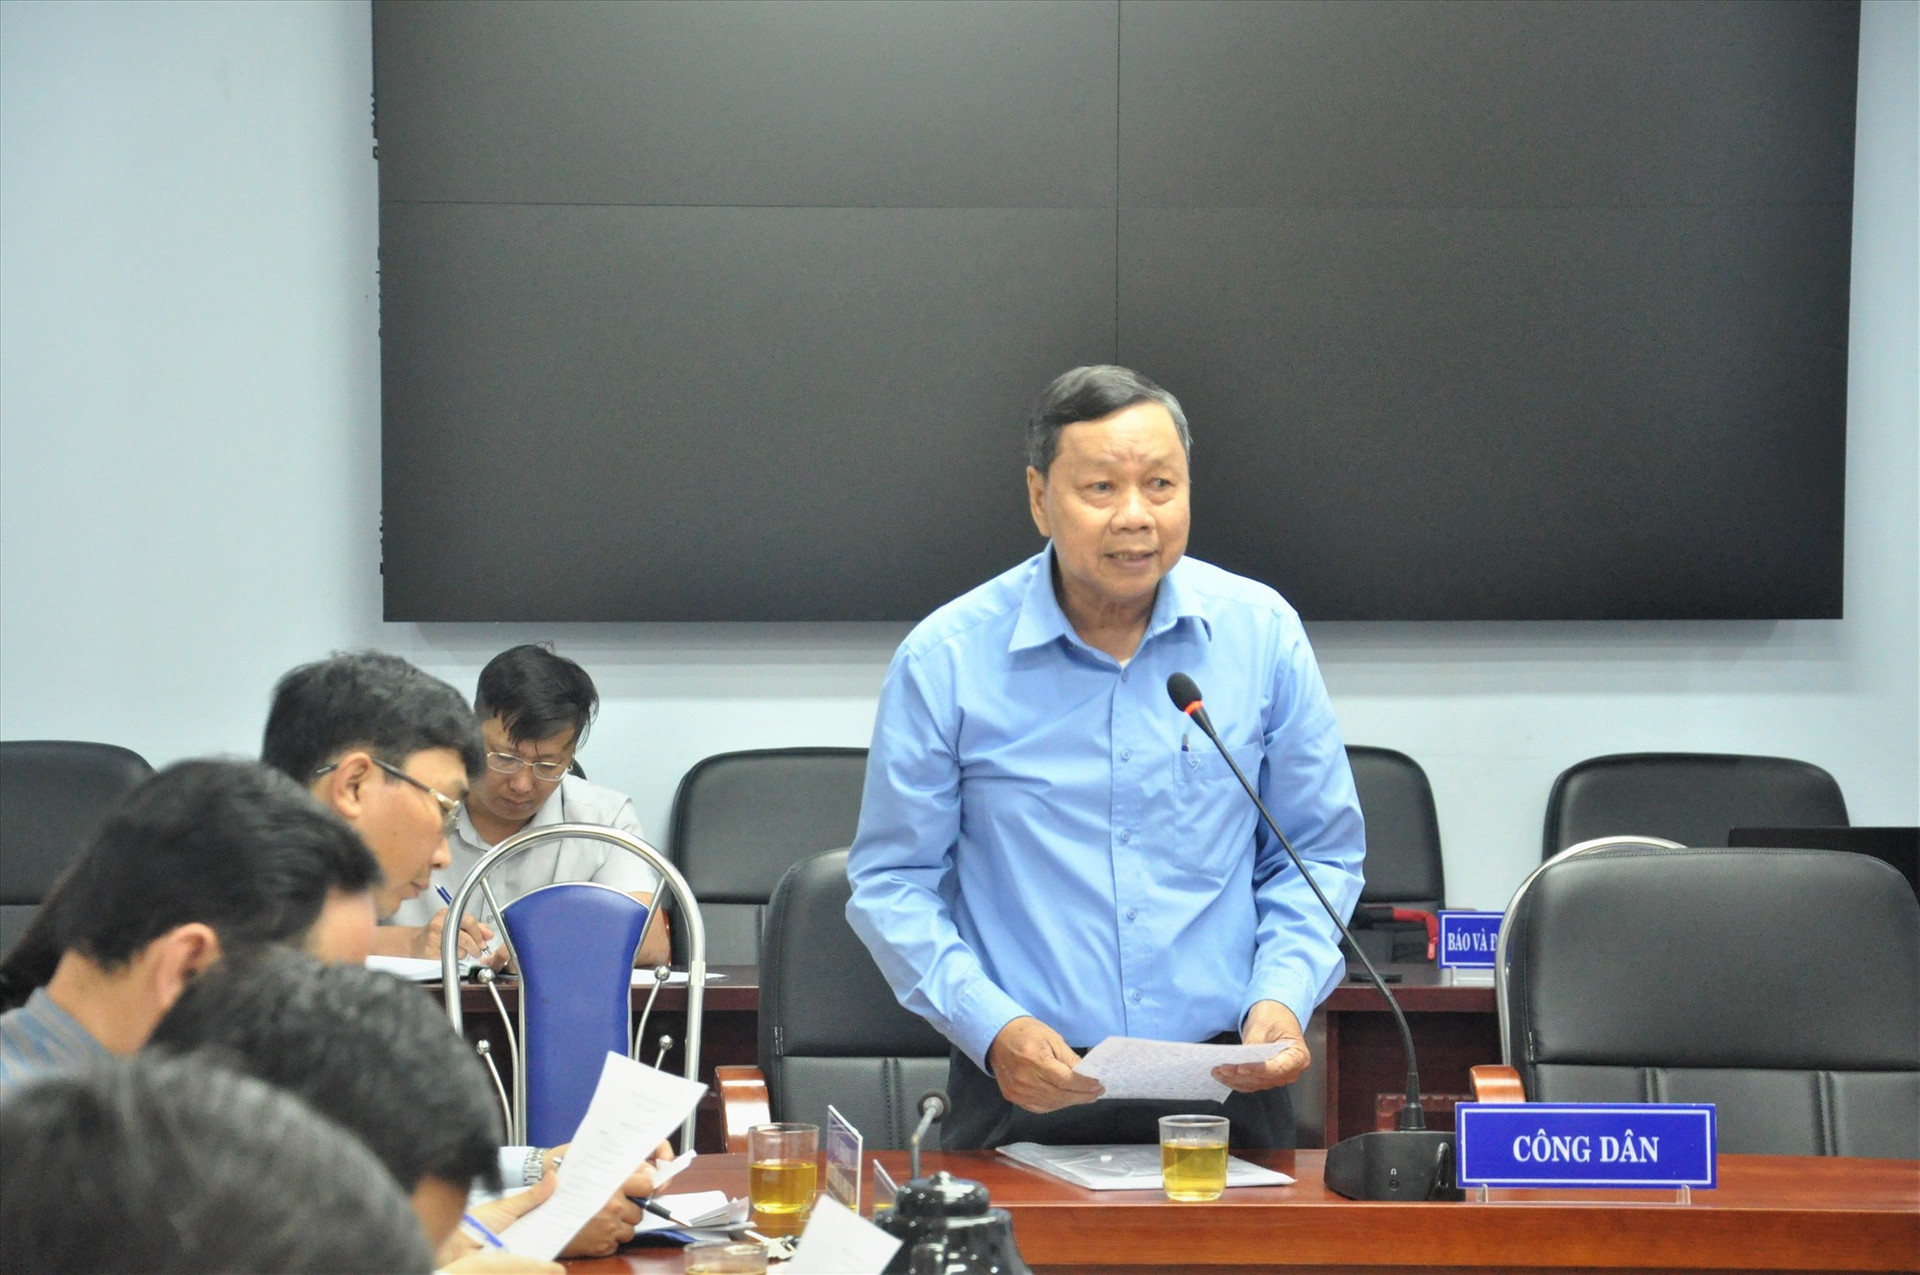 Ông Phạm Văn Thi đề nghị lãnh đạo tỉnh chỉ đạo huyện Núi Thành sớm giải quyết vụ việc. Ảnh: X.P